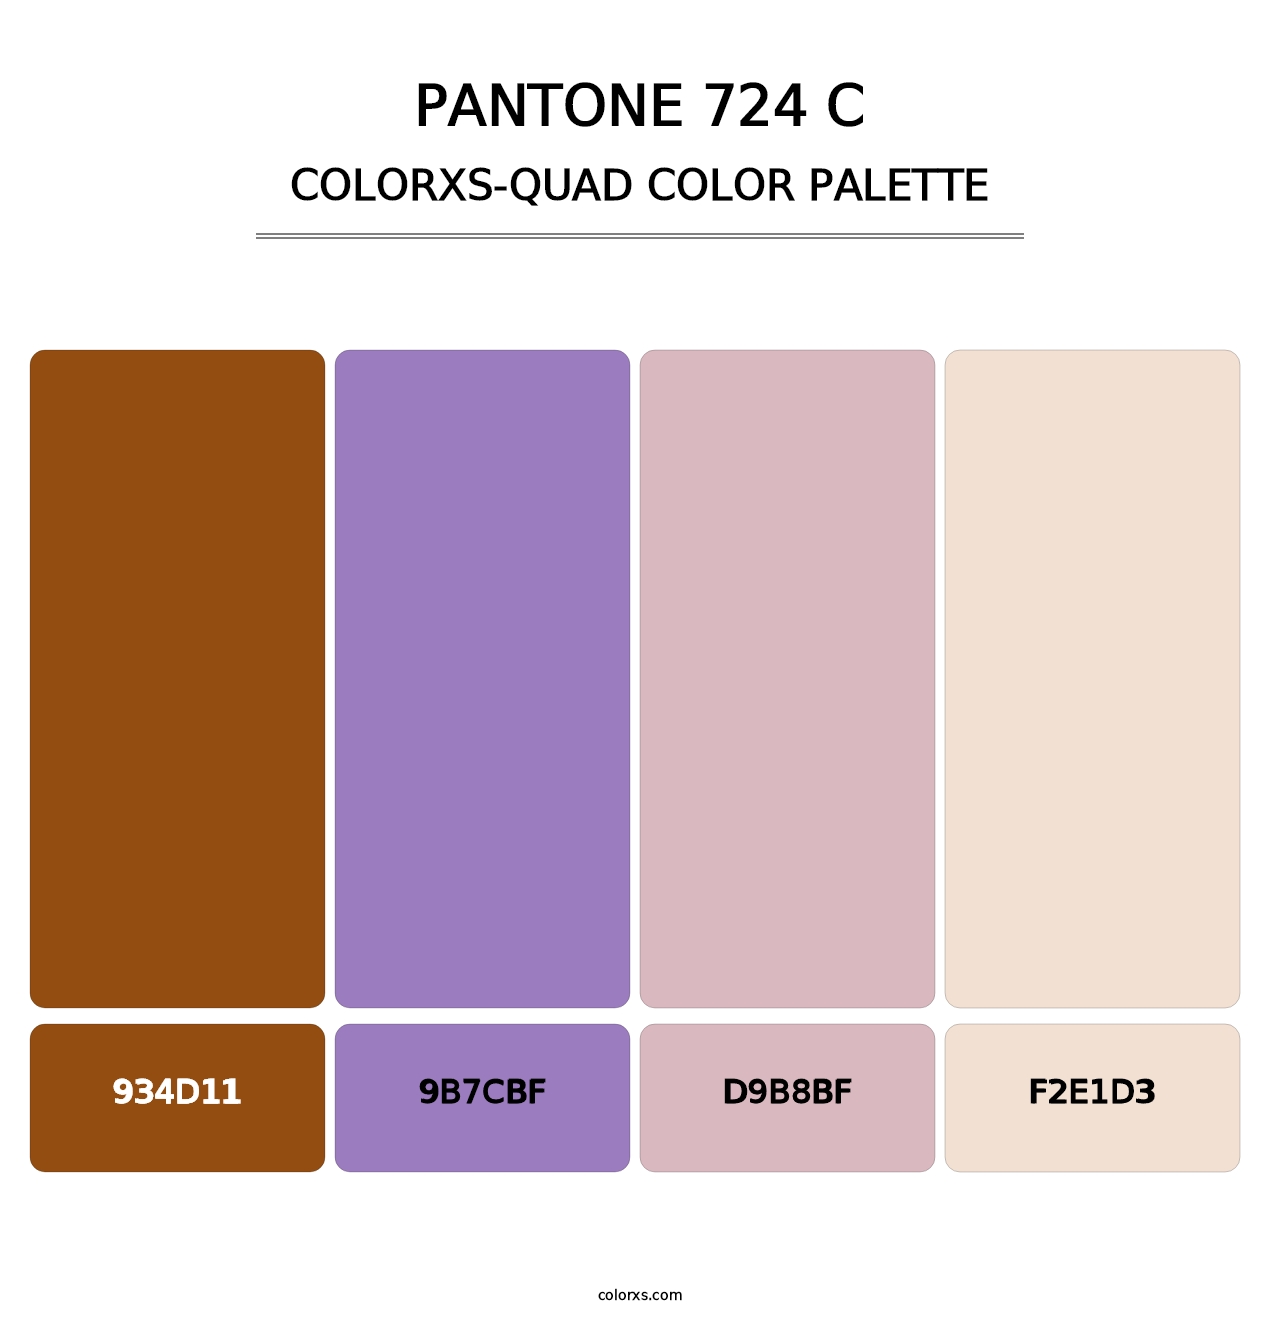 PANTONE 724 C - Colorxs Quad Palette